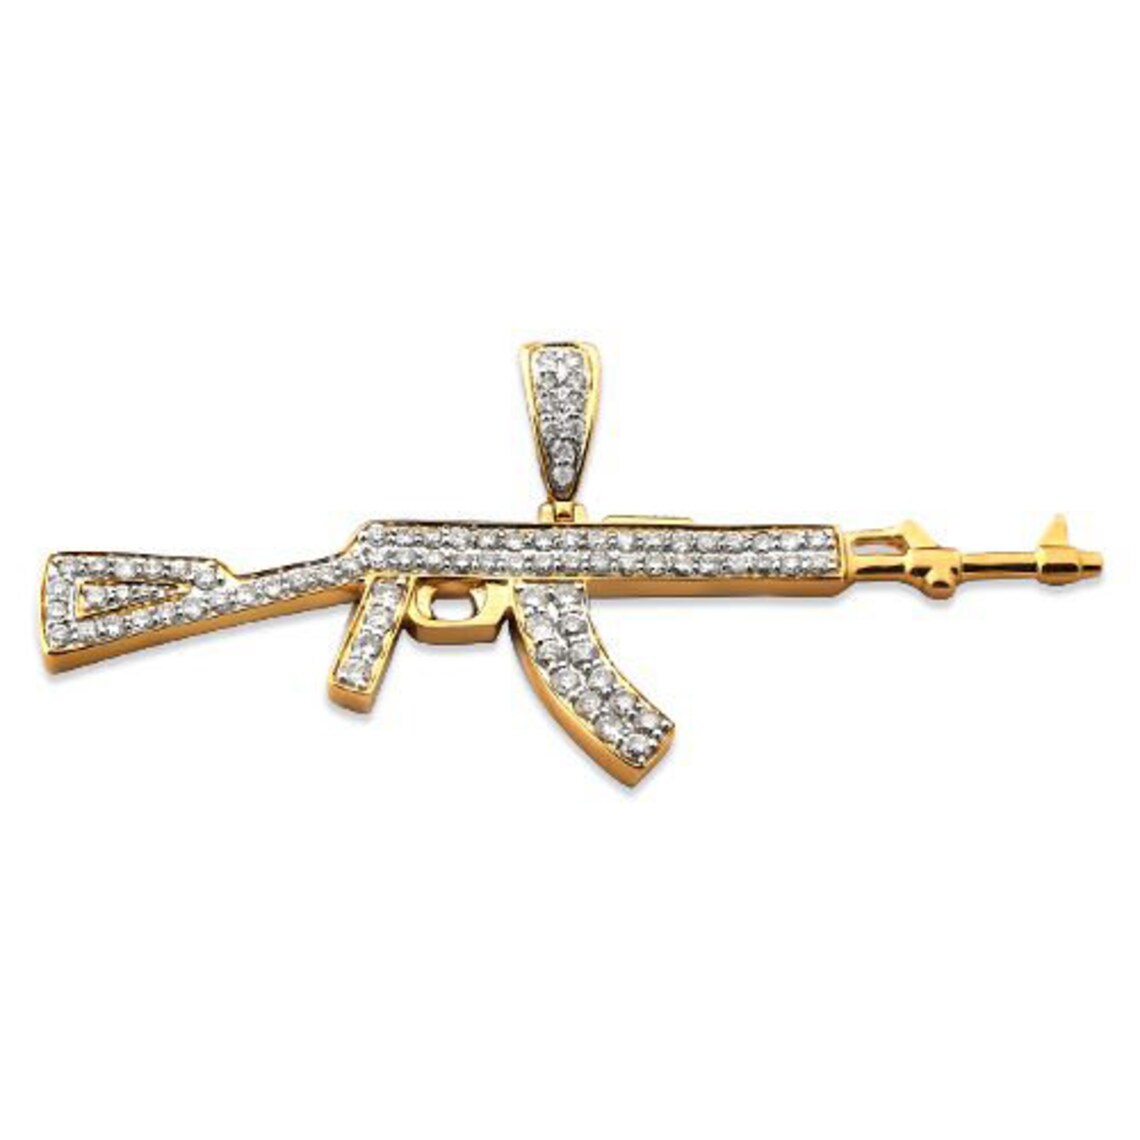 AK 47 Necklace | Techwear Jewelry – Karnage Streetwear